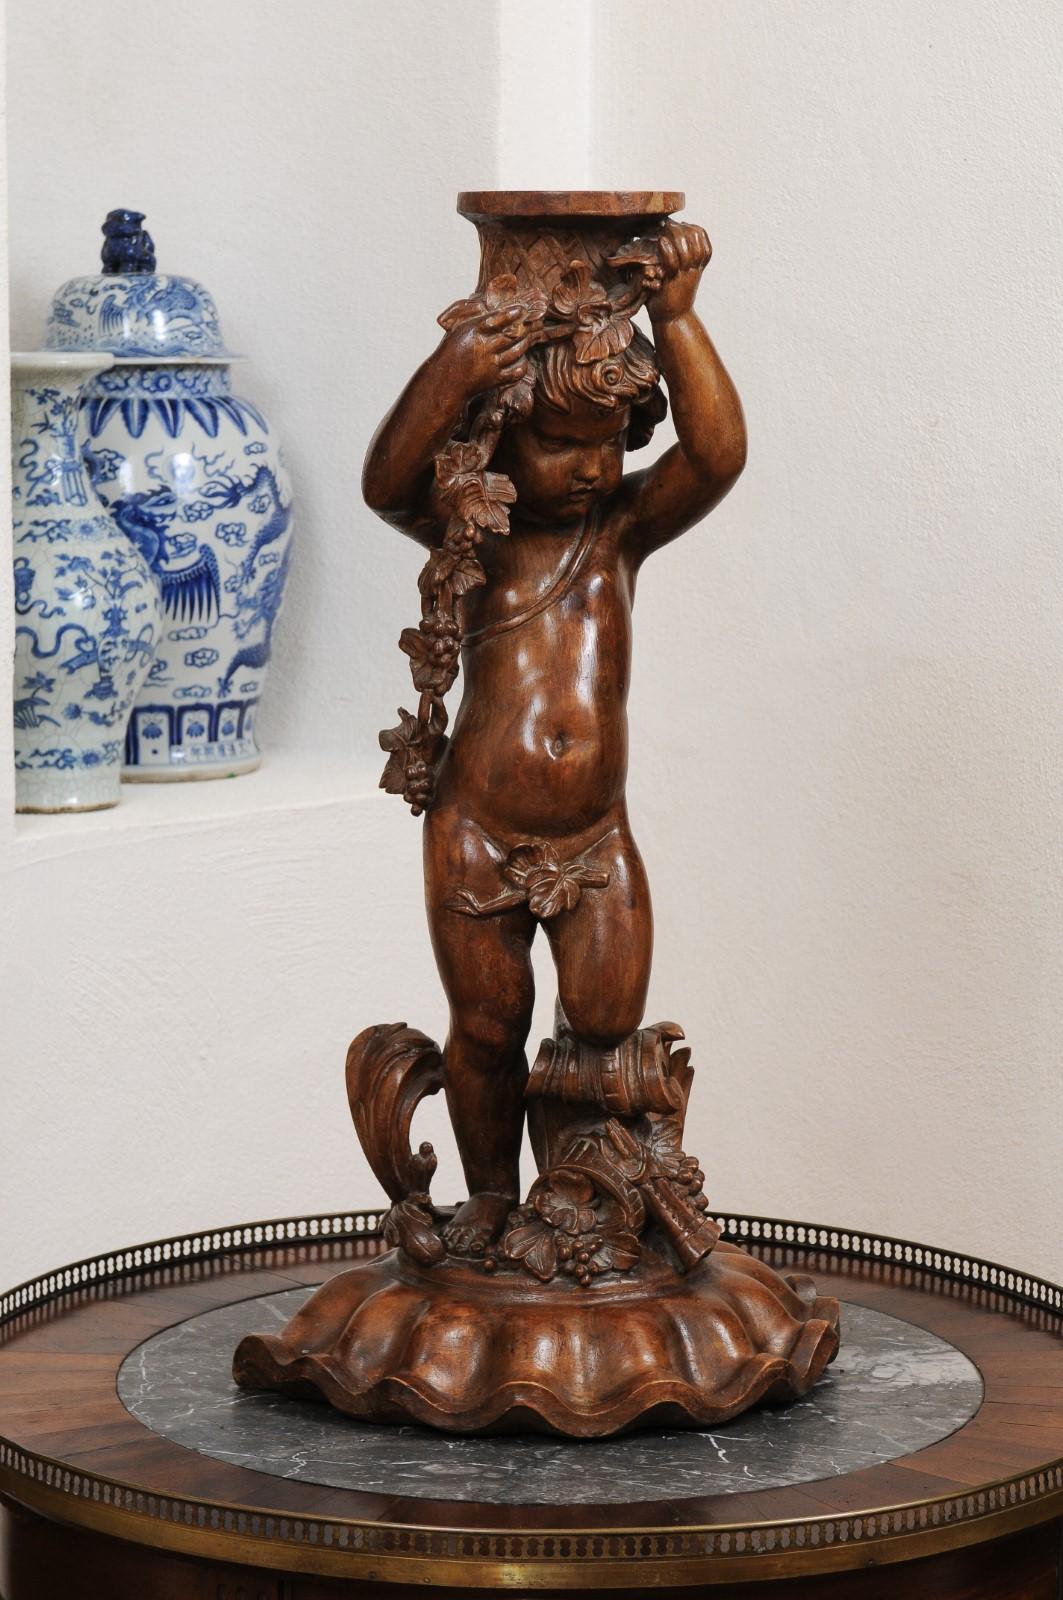 Sculpture en noyer sculpté d'époque Napoléon III, datant du milieu du XIXe siècle, représentant des raisins, des fleurs et une double flûte. Créée en France dans le troisième quart du XIXe siècle, cette sculpture en noyer sculpté représente un putto